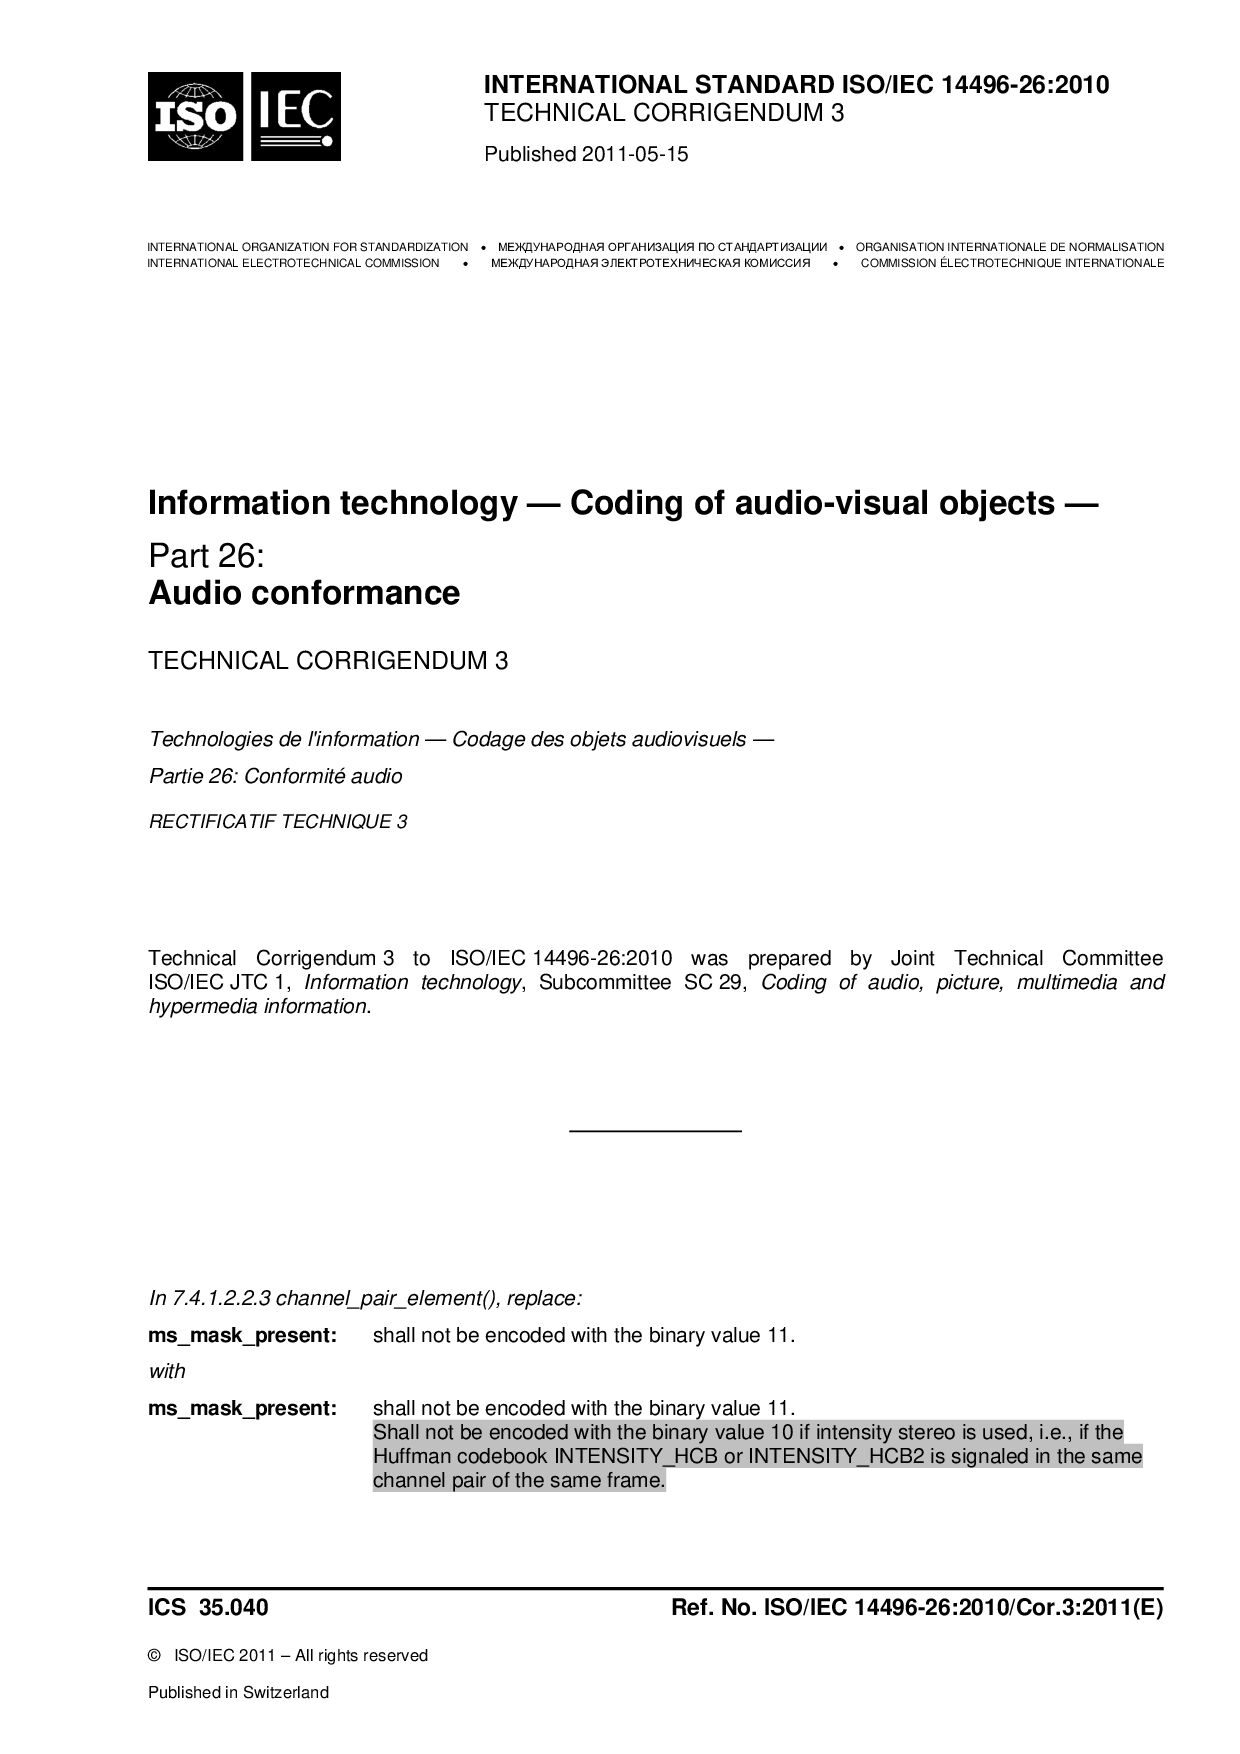 ISO/IEC 14496-26:2010/Cor 3:2011封面图